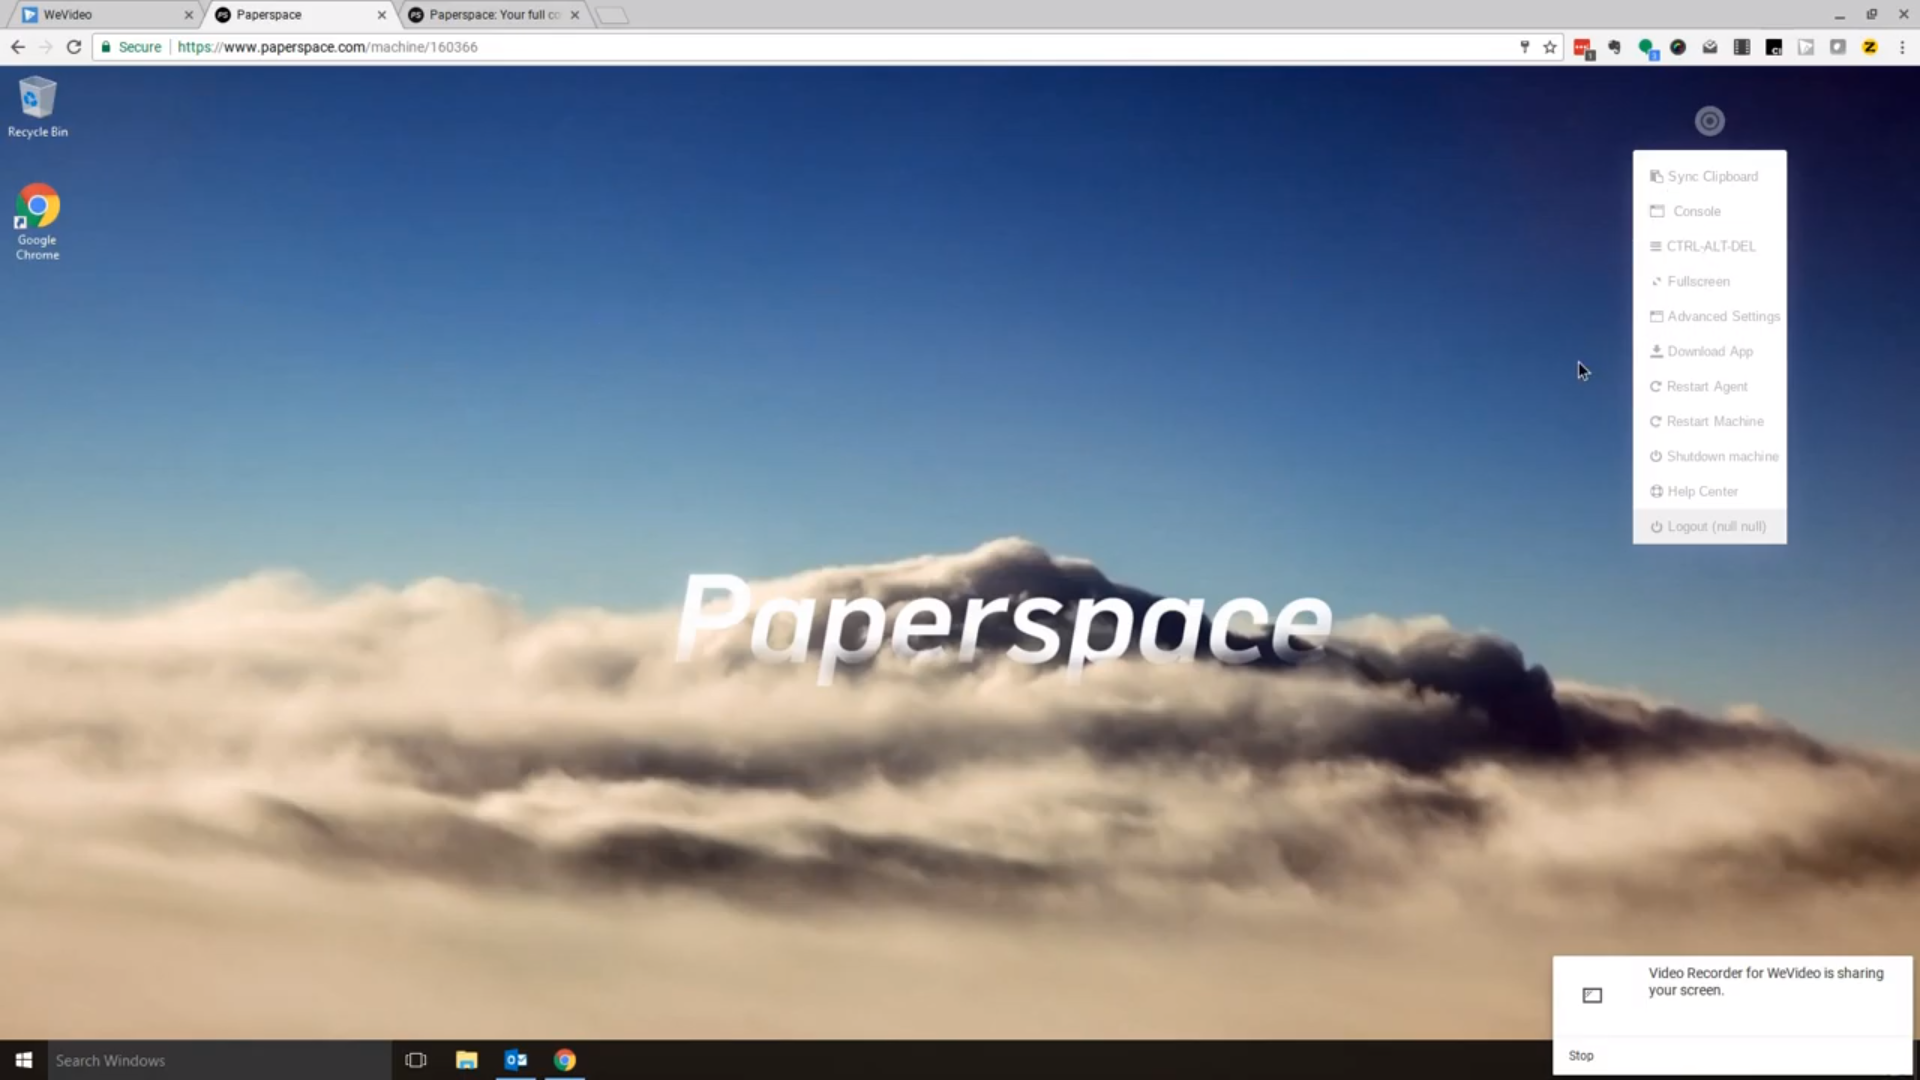 Paperspace desktop display